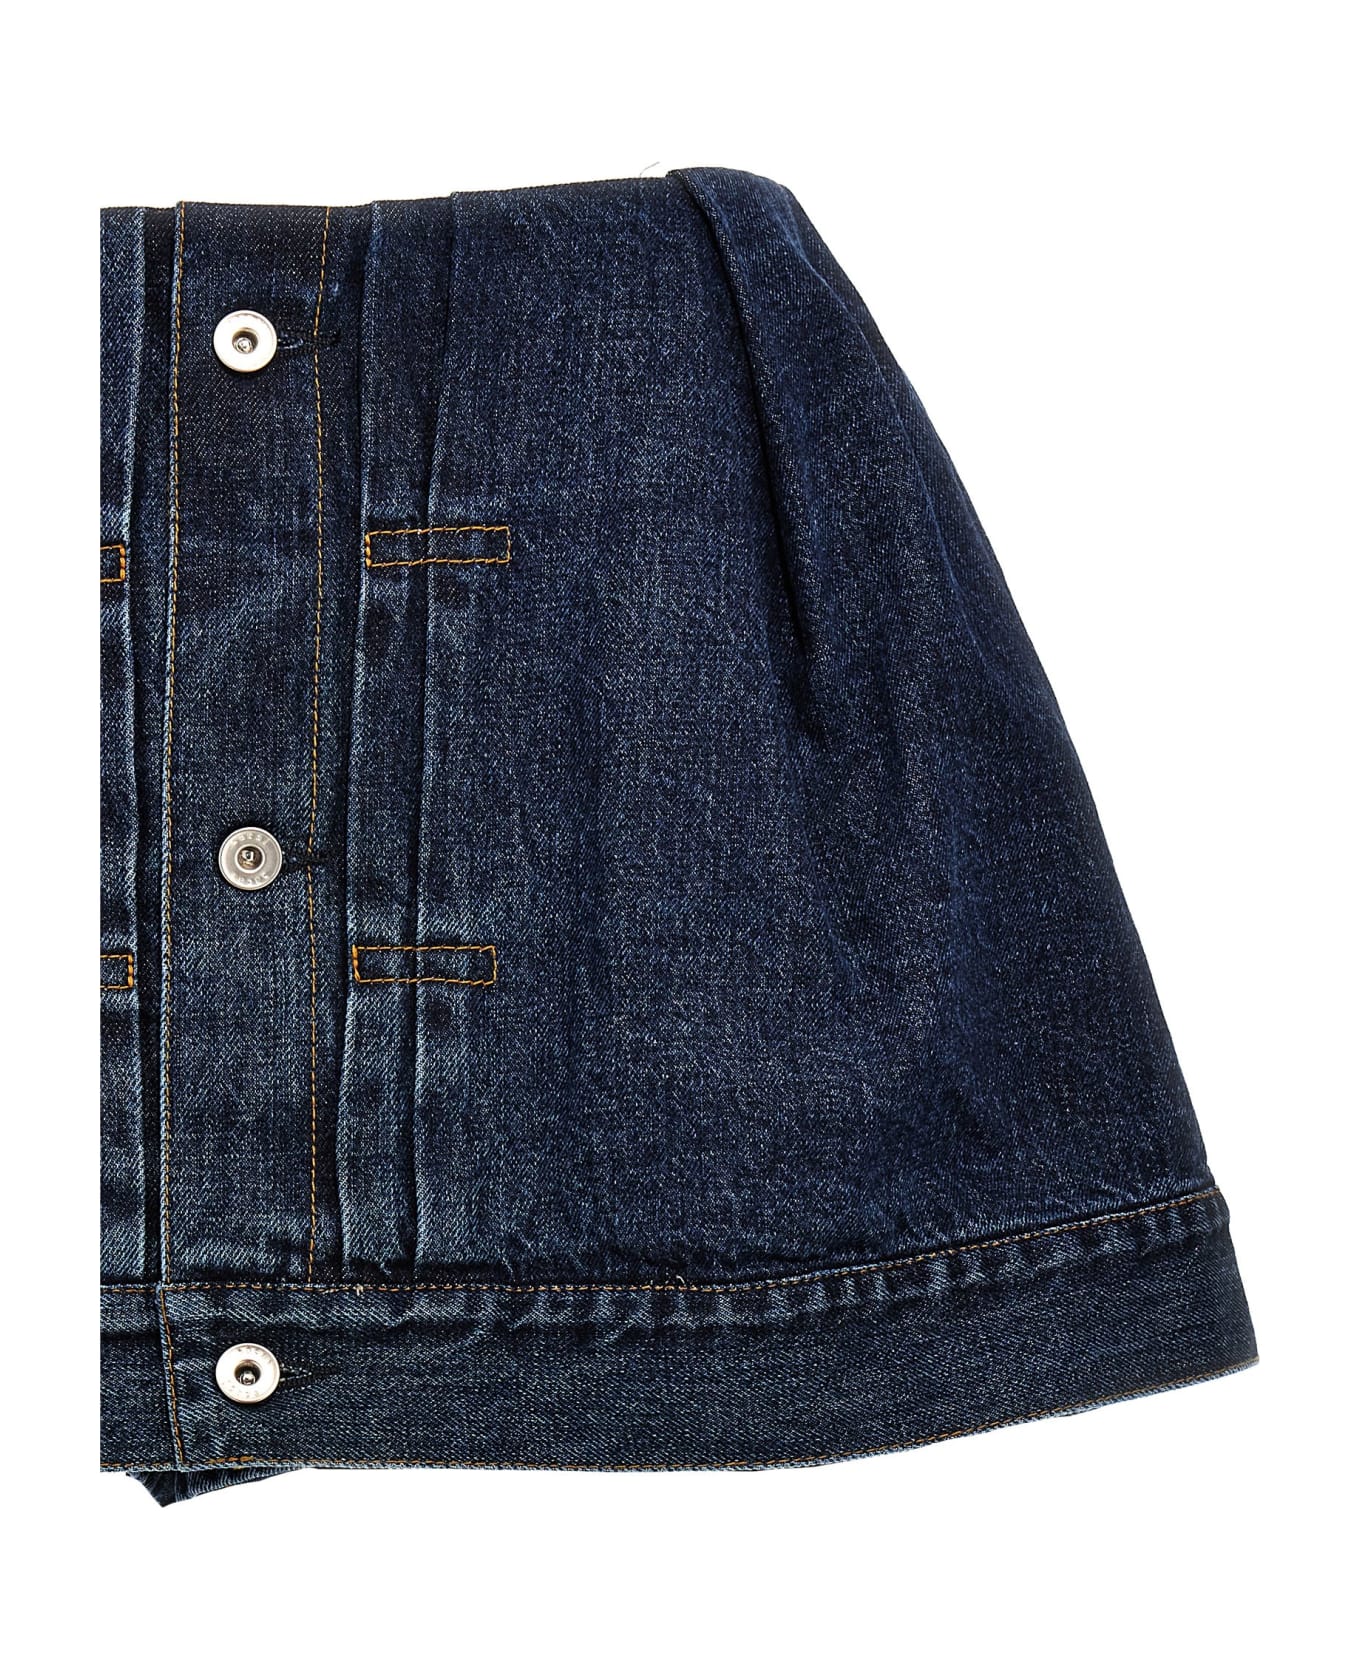 Sacai Denim Shorts - Blue ショートパンツ